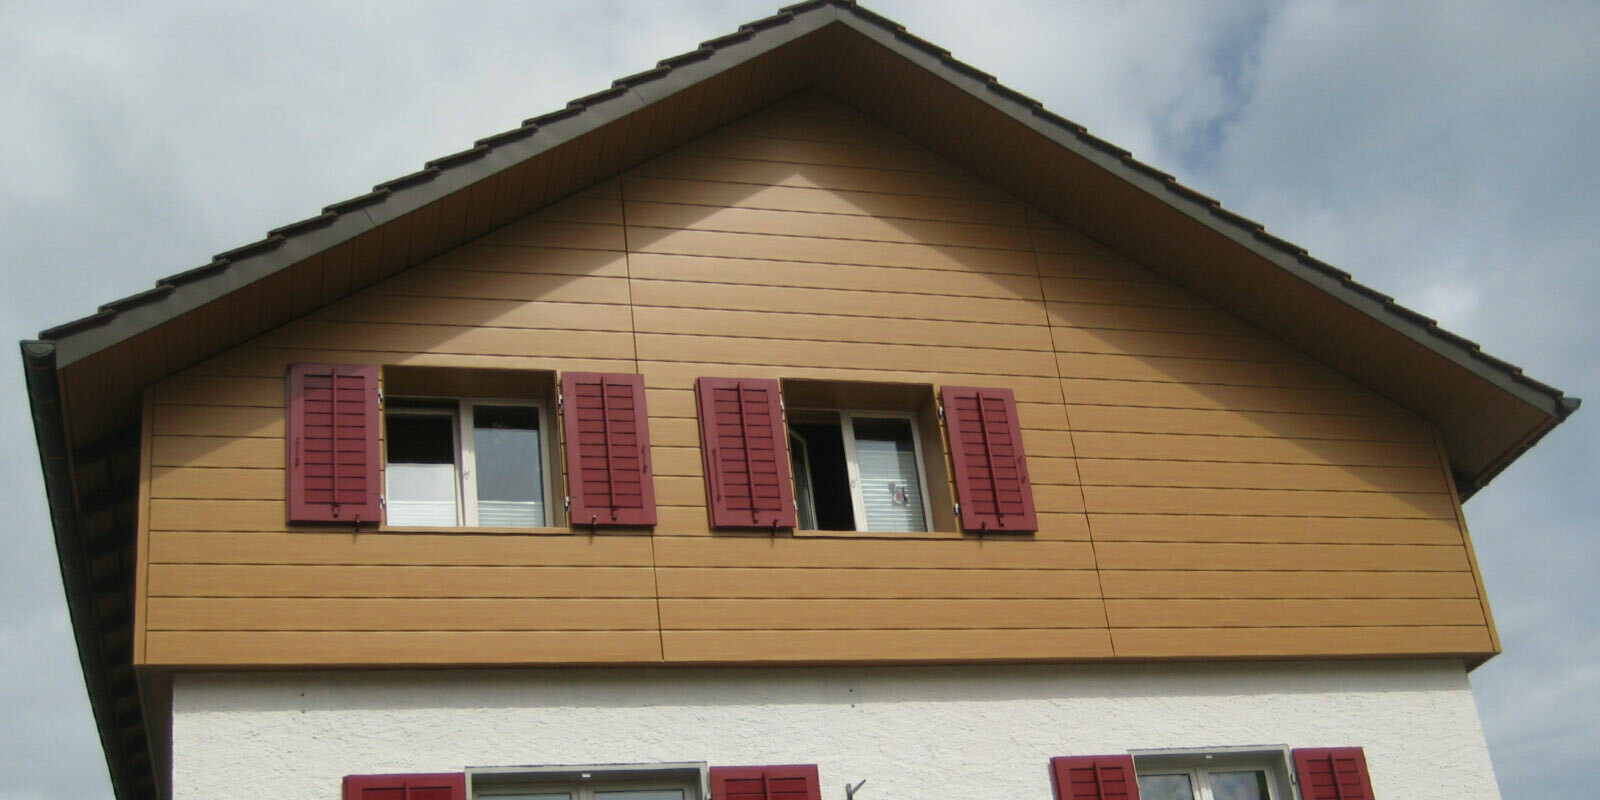 Facciata con effetto legno con doghe di rivestimento PREFA in posa orizzontale, finestre con persiane rosse